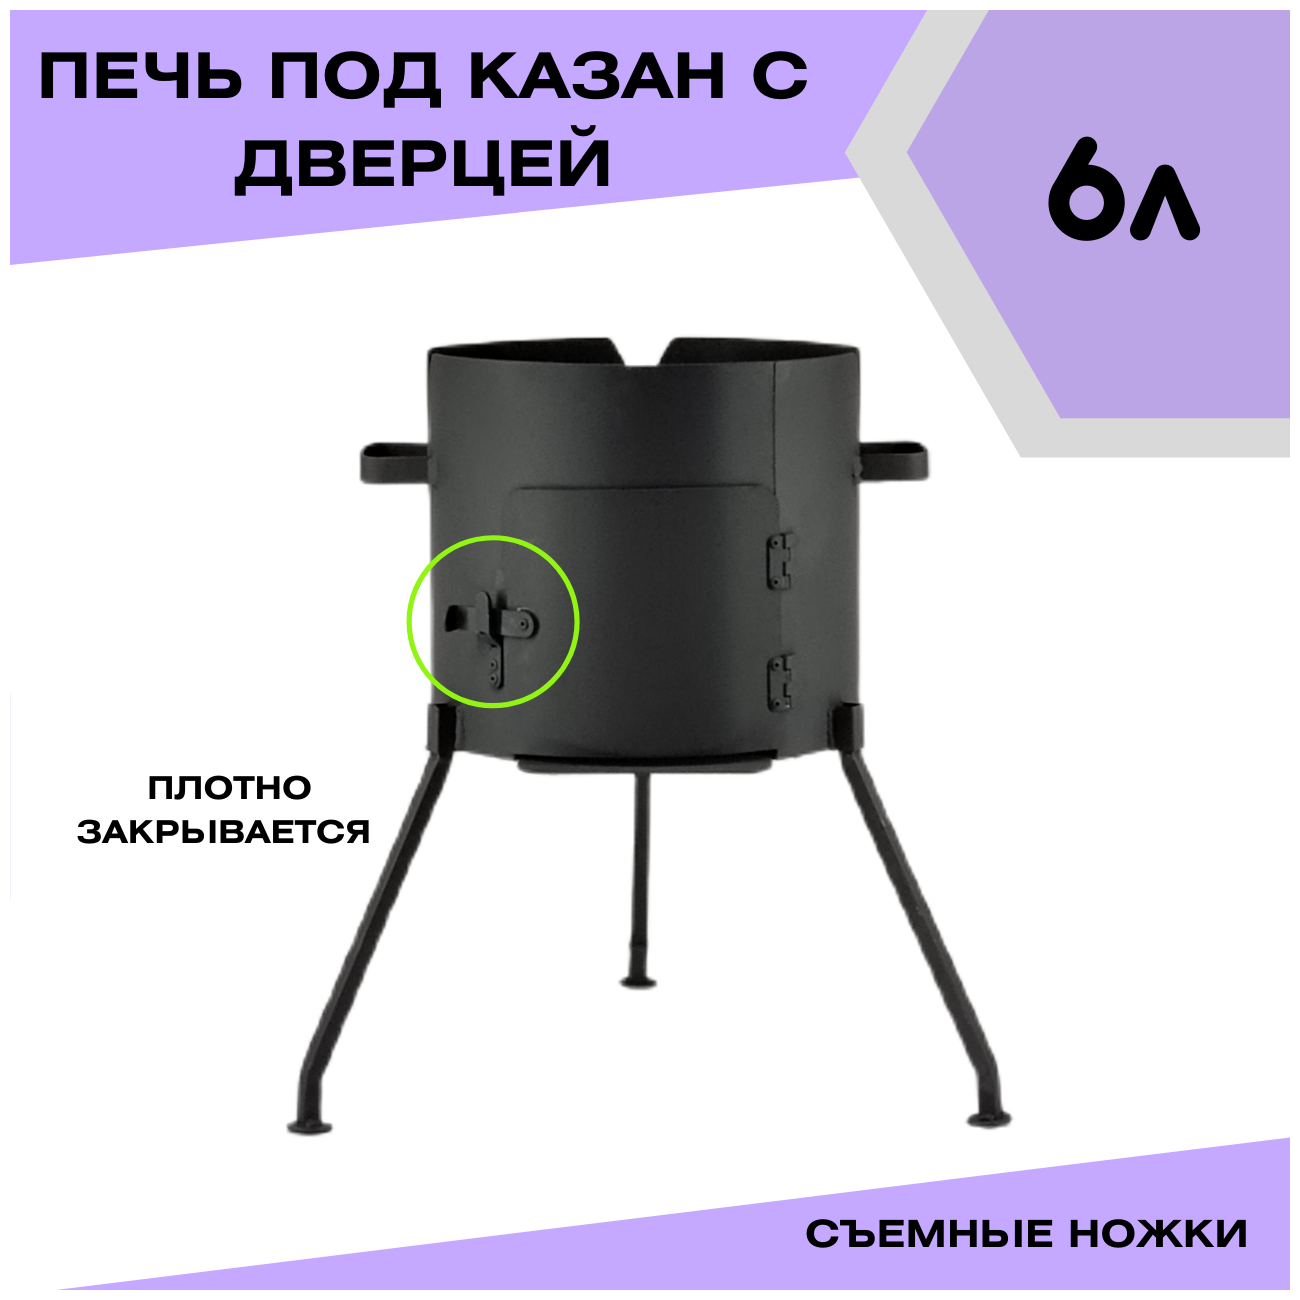 Комплект: казан 6 литров чугунный Узбекский + печь с дверцей Svargan 2 мм + шумовка + половник - фотография № 10